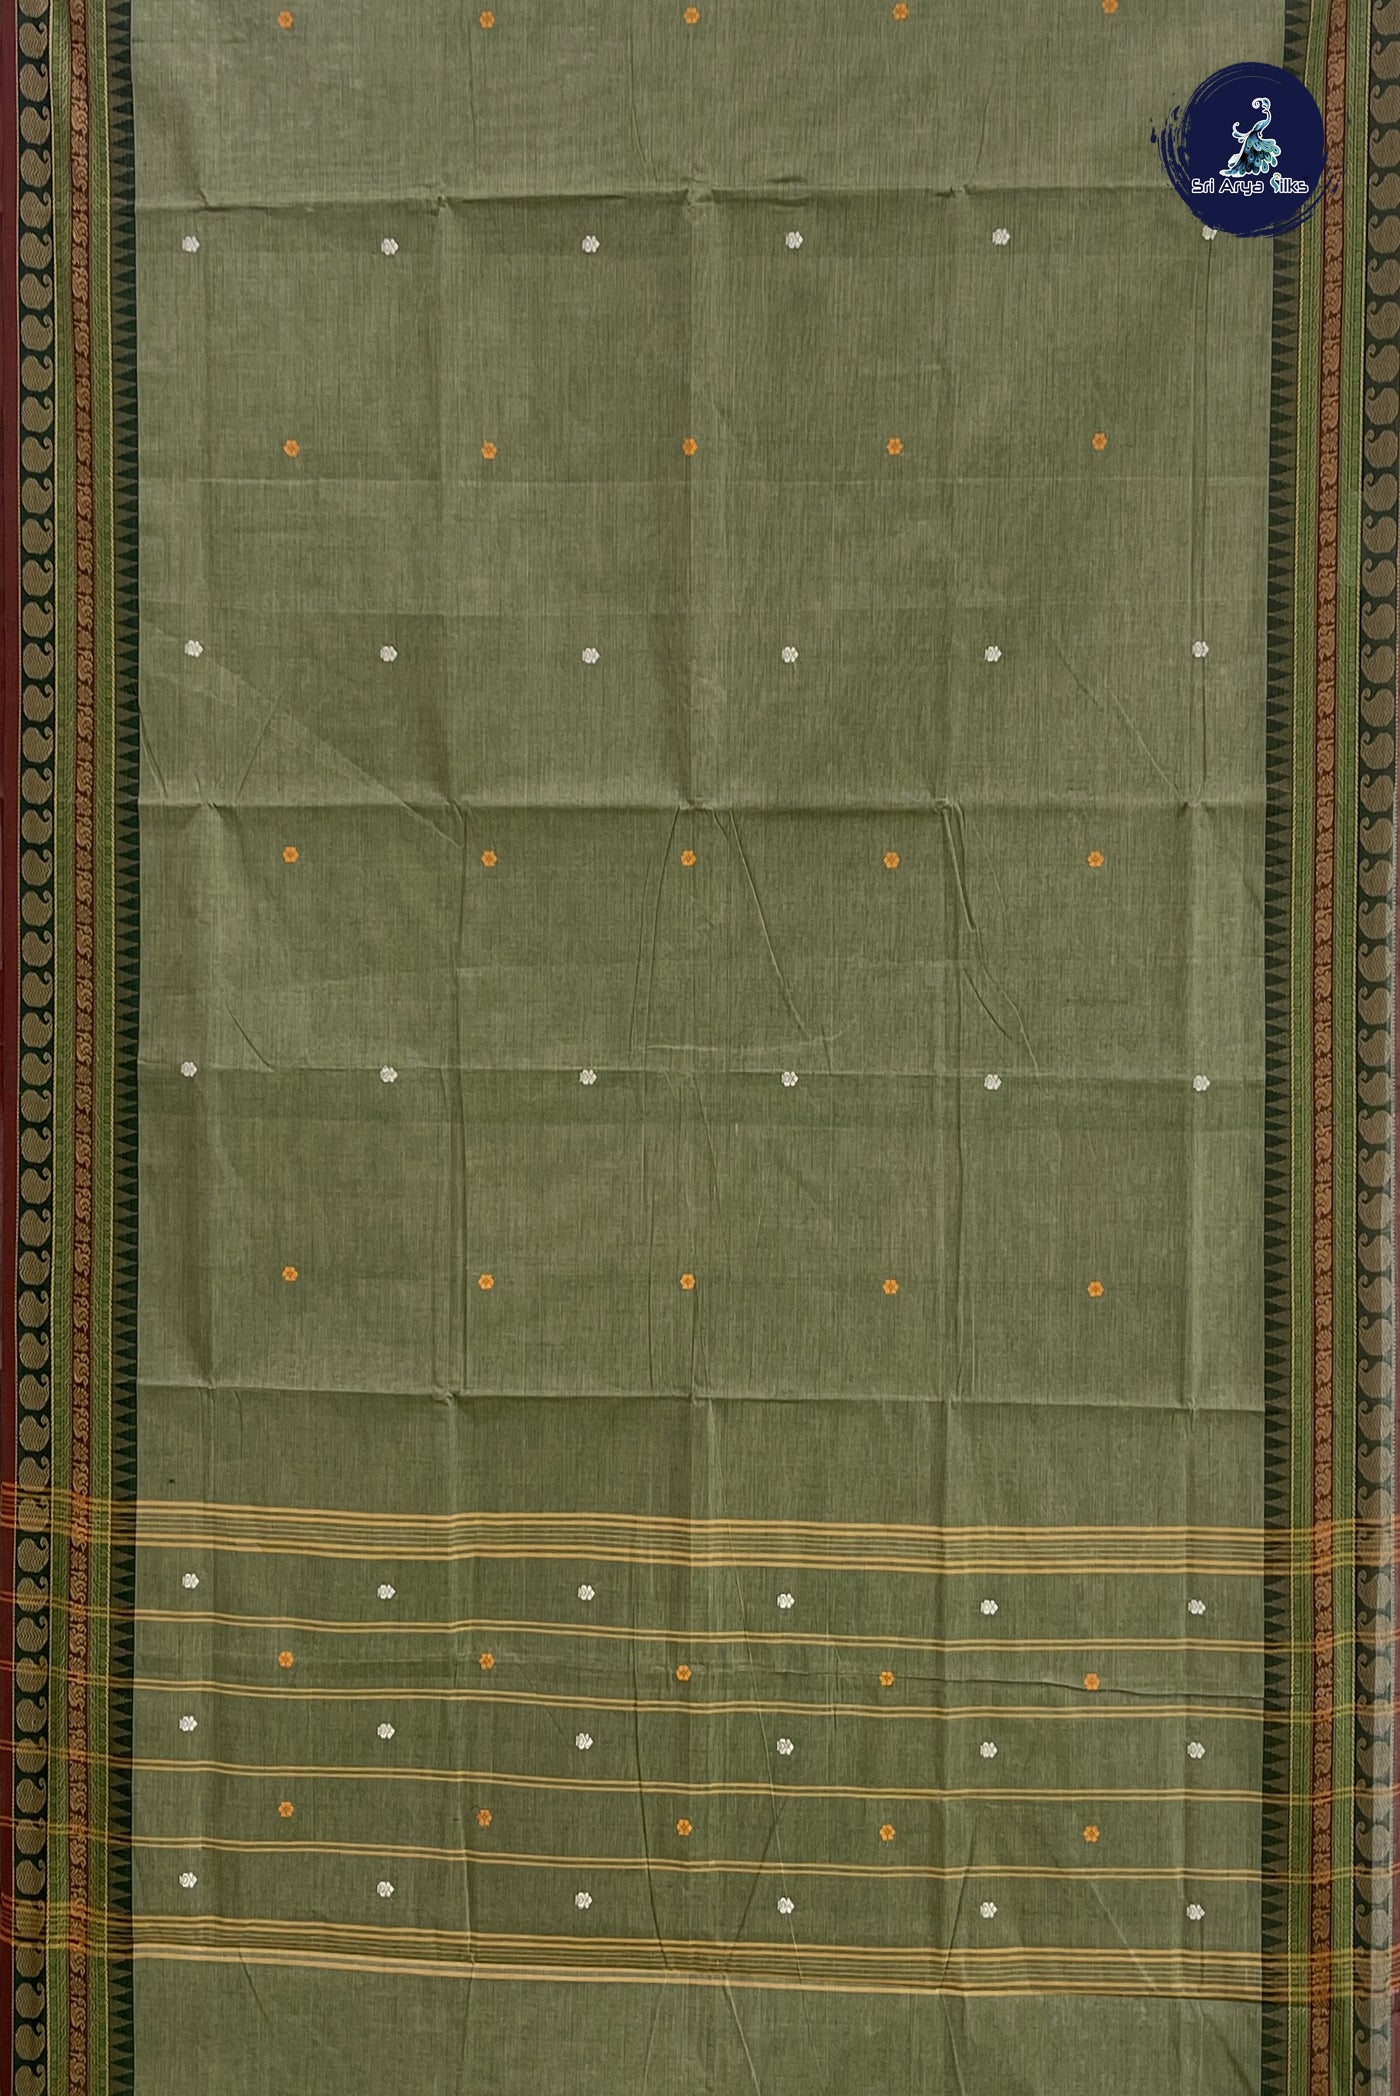 Wasabi Green Cotton Saree With Thread Work Pattern